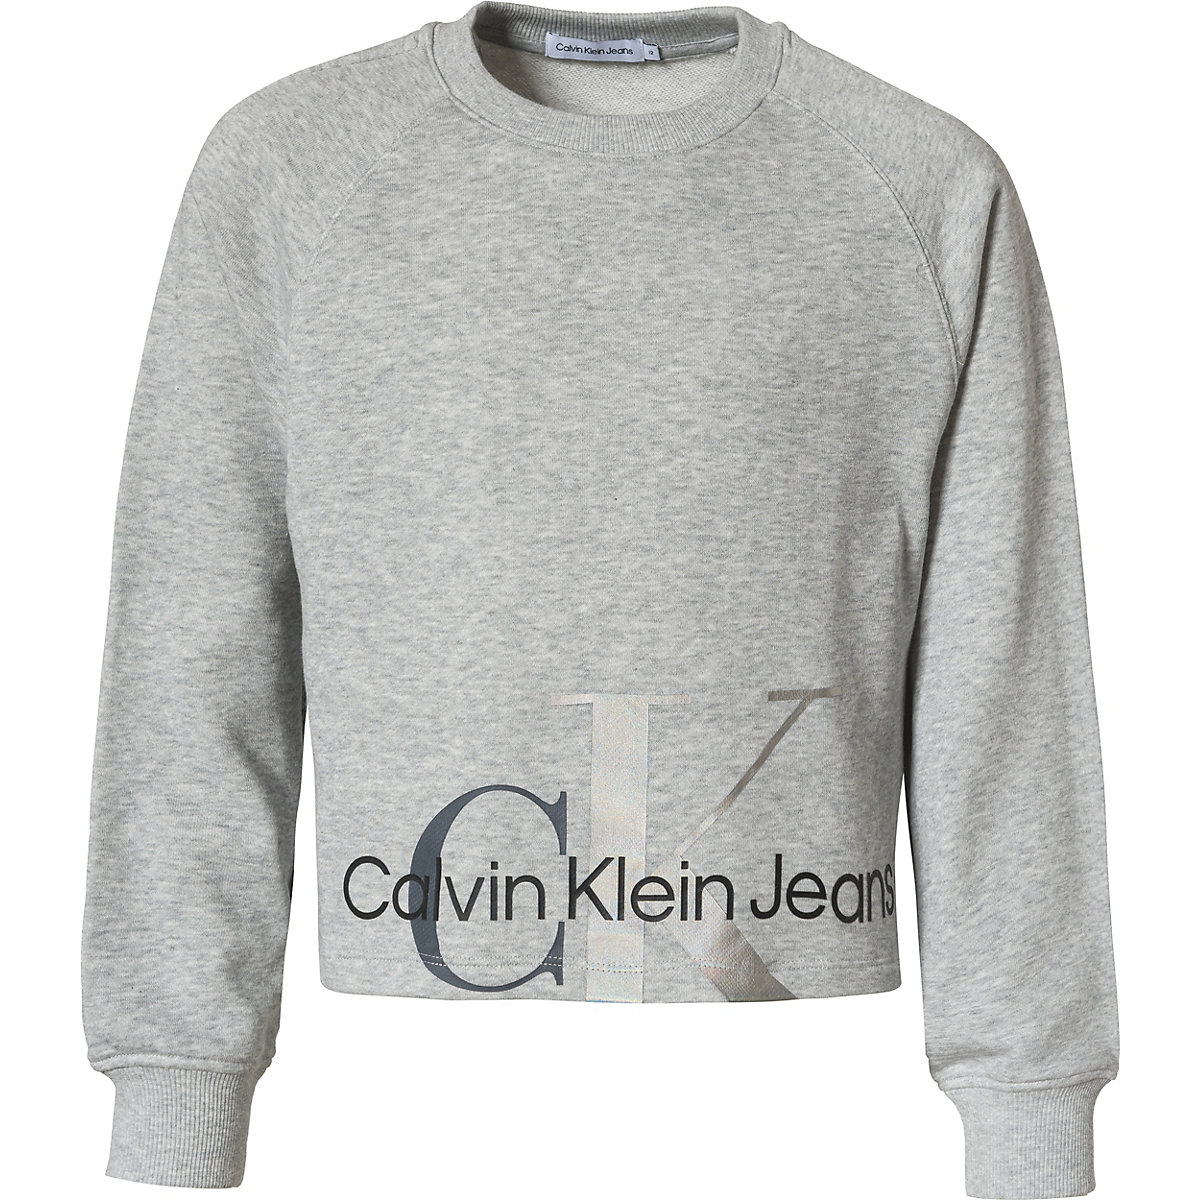 CALVIN KLEIN JEANS Sweatshirt für Mädchen grau